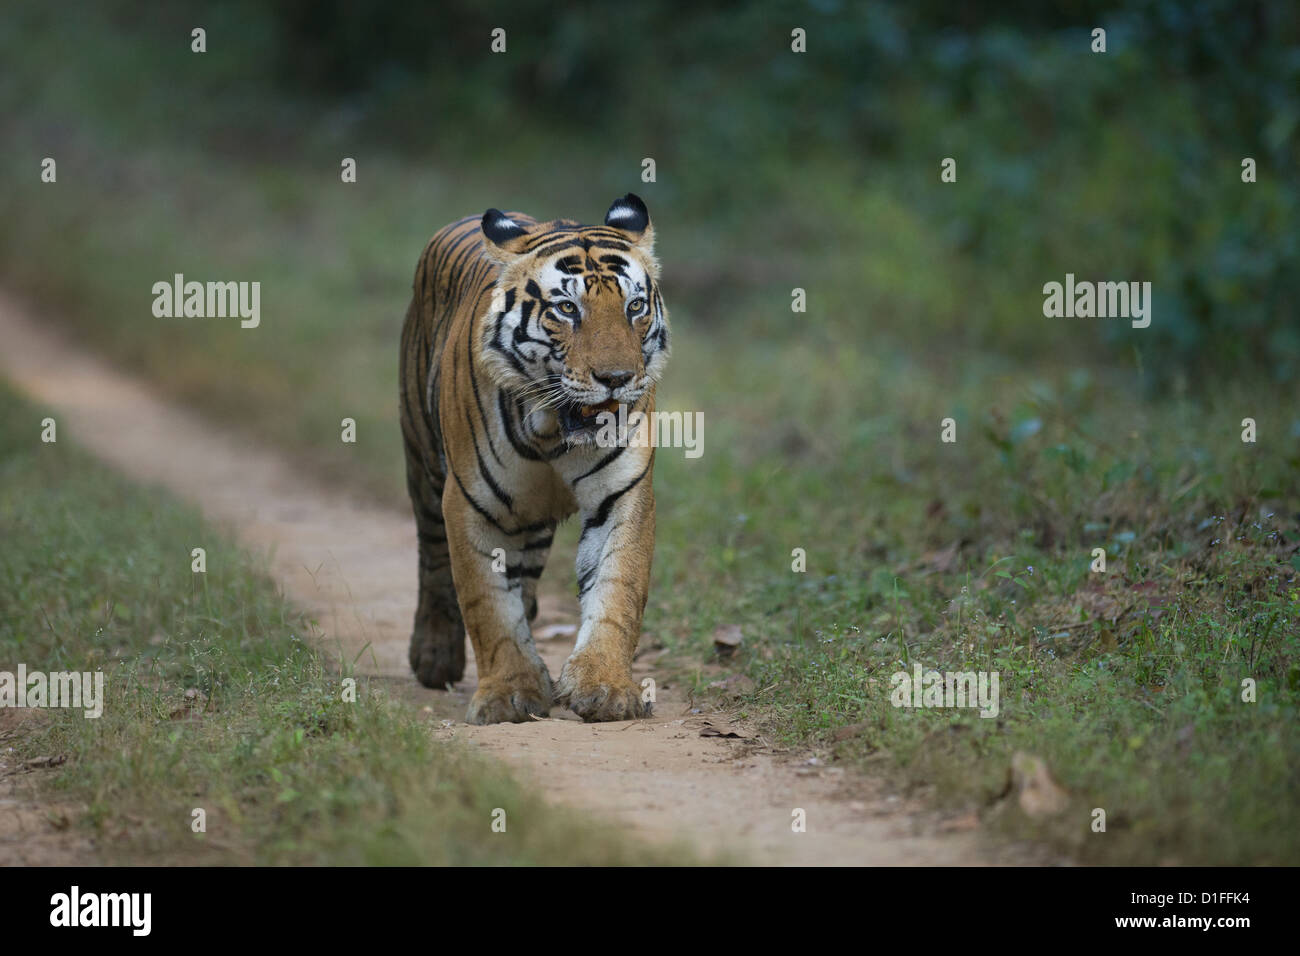 Tigre maschio chiamato 'Munna', con la fronte motivo a strisce che assomiglia alla parola 'cat', passeggiate su una pista forestale. Foto Stock